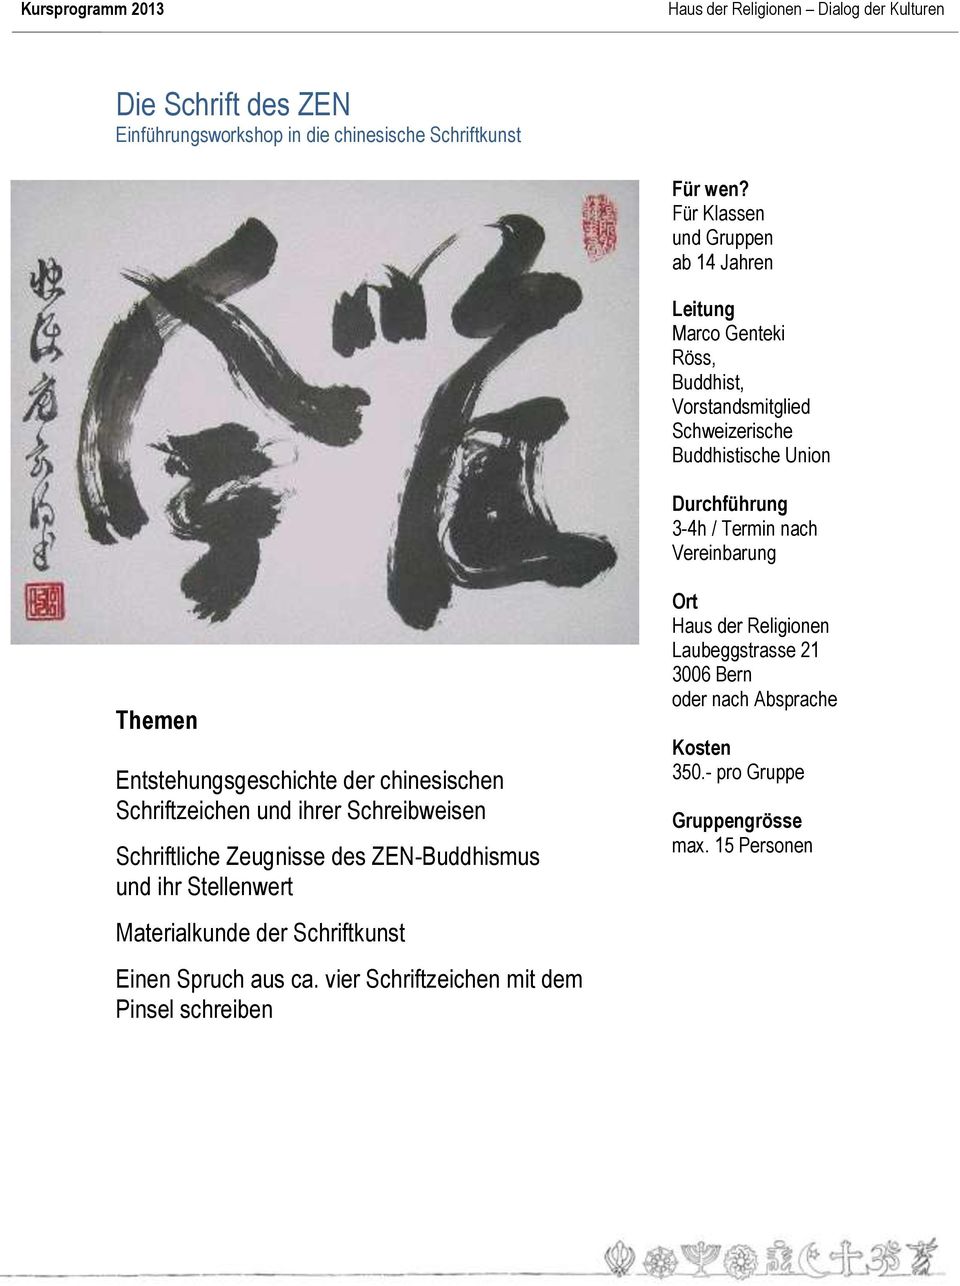 Entstehungsgeschichte der chinesischen Schriftzeichen und ihrer Schreibweisen Schriftliche Zeugnisse des ZEN-Buddhismus und ihr